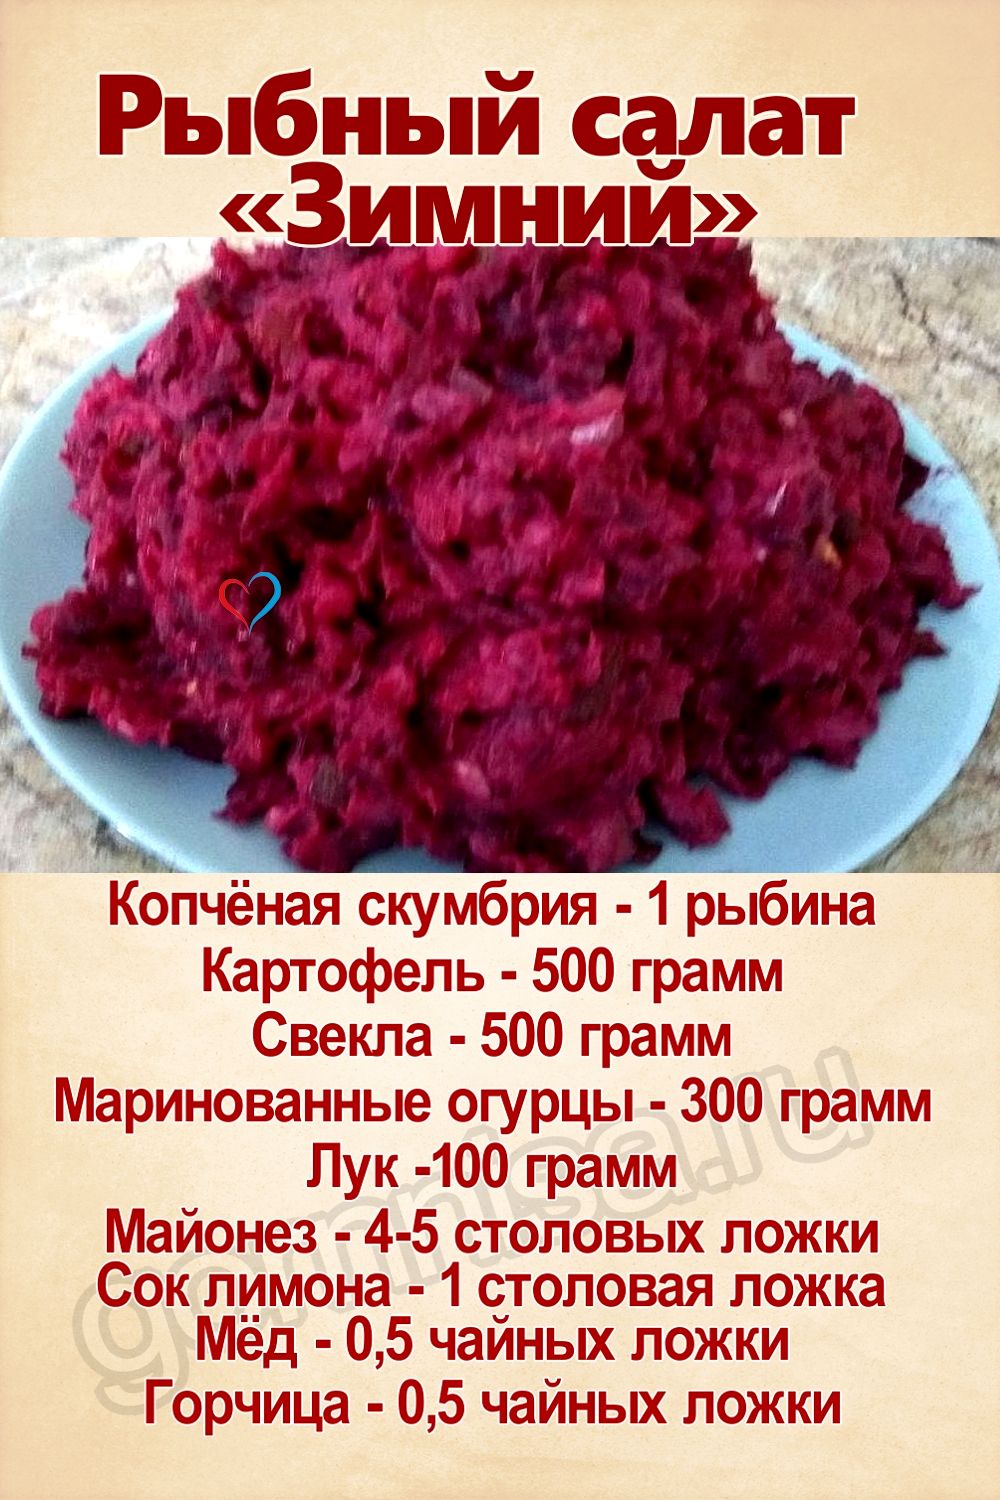 Рецепт недели - Рыбный салат «Зимний»